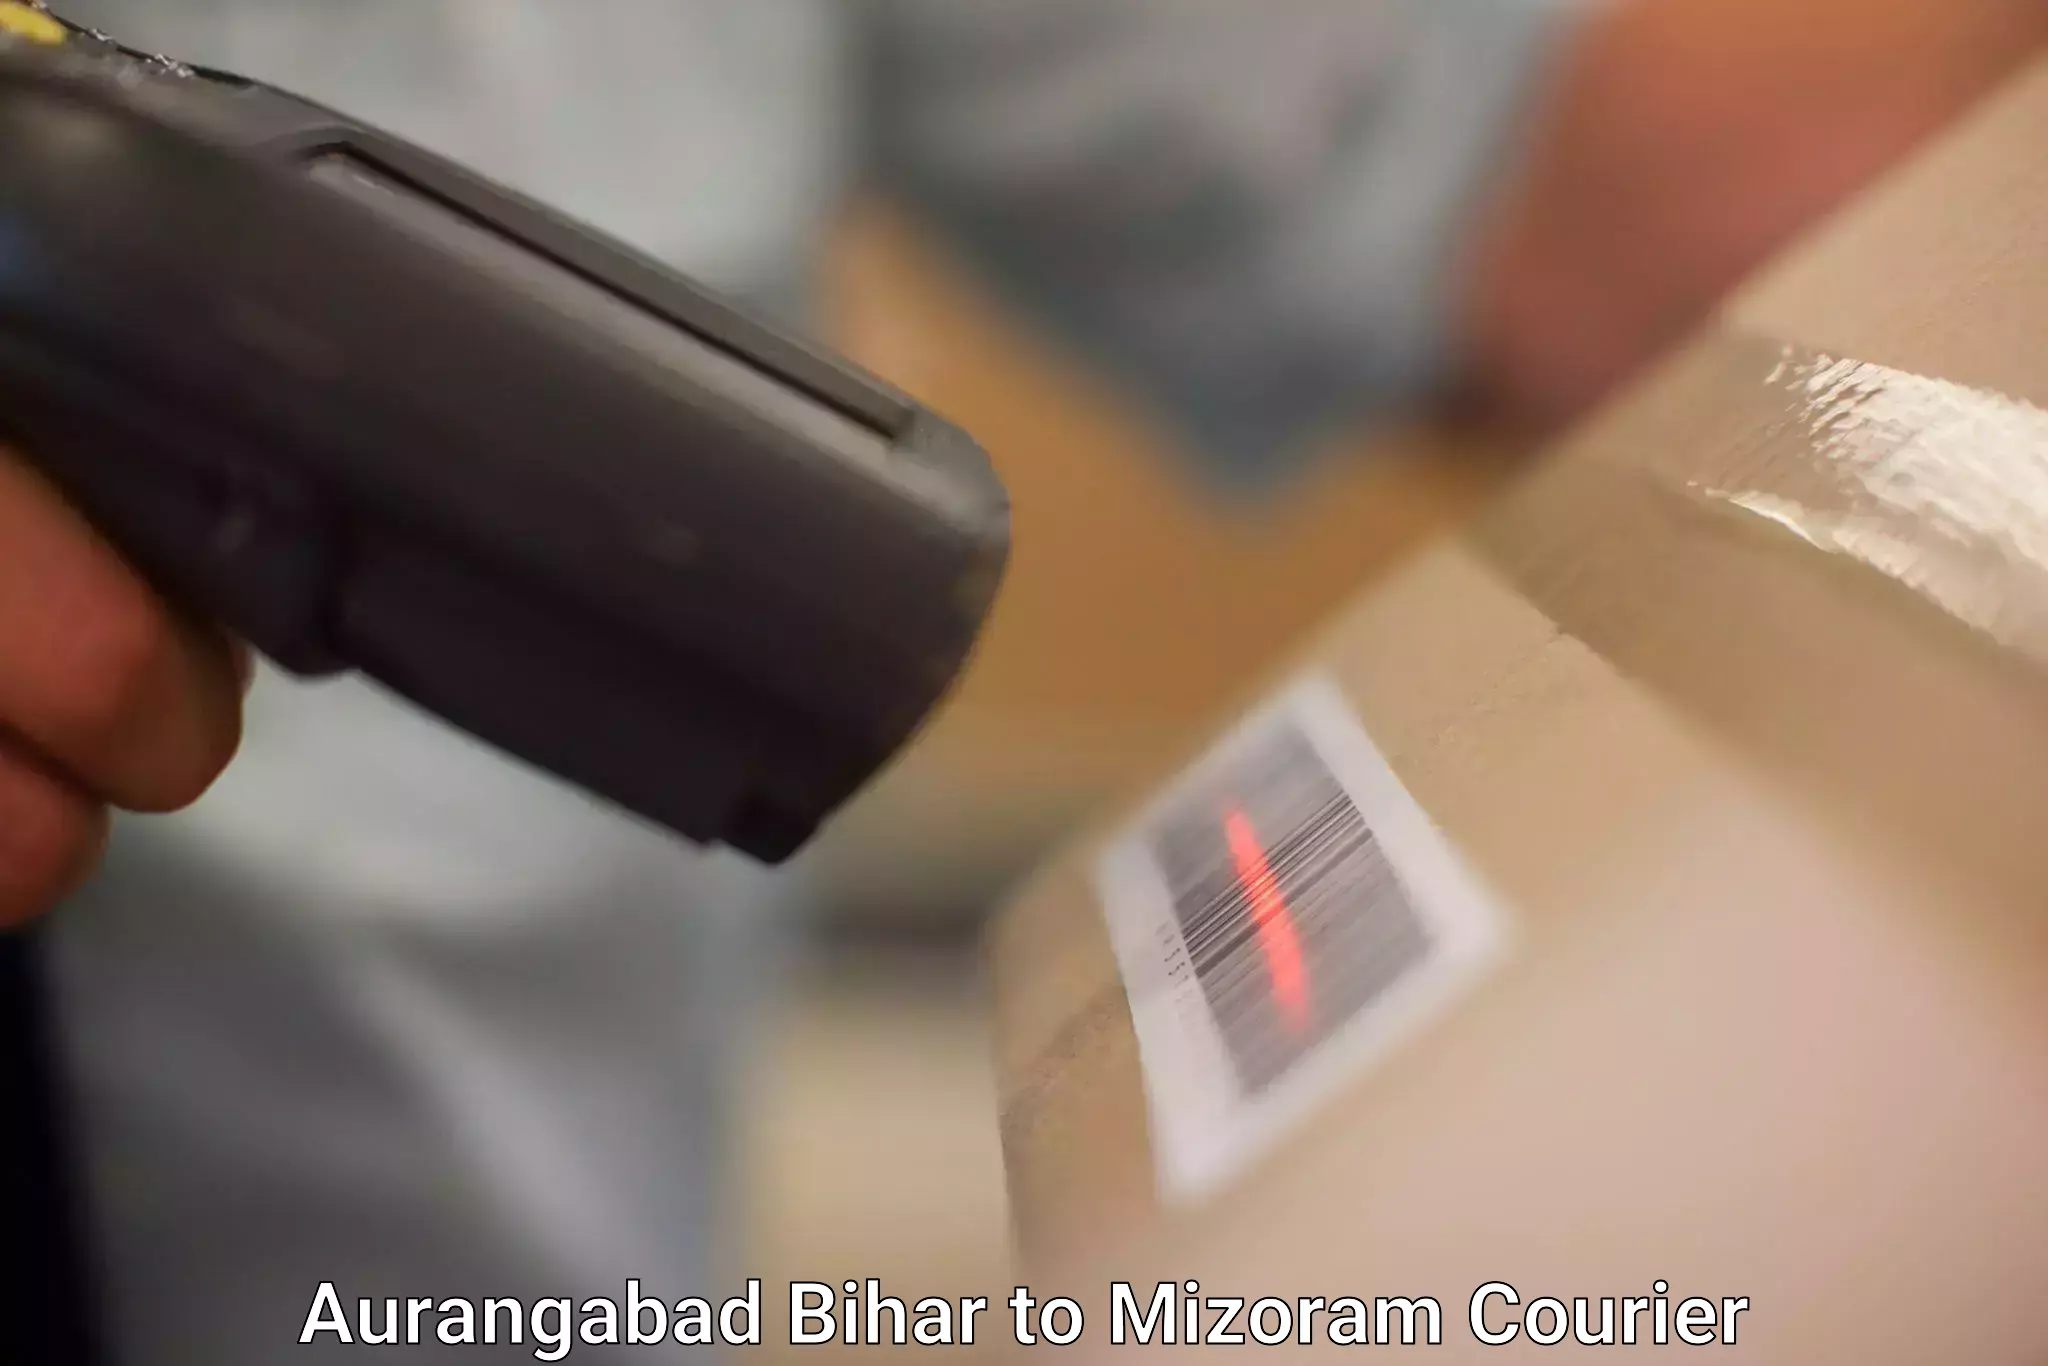 Efficient parcel service Aurangabad Bihar to Lawngtlai